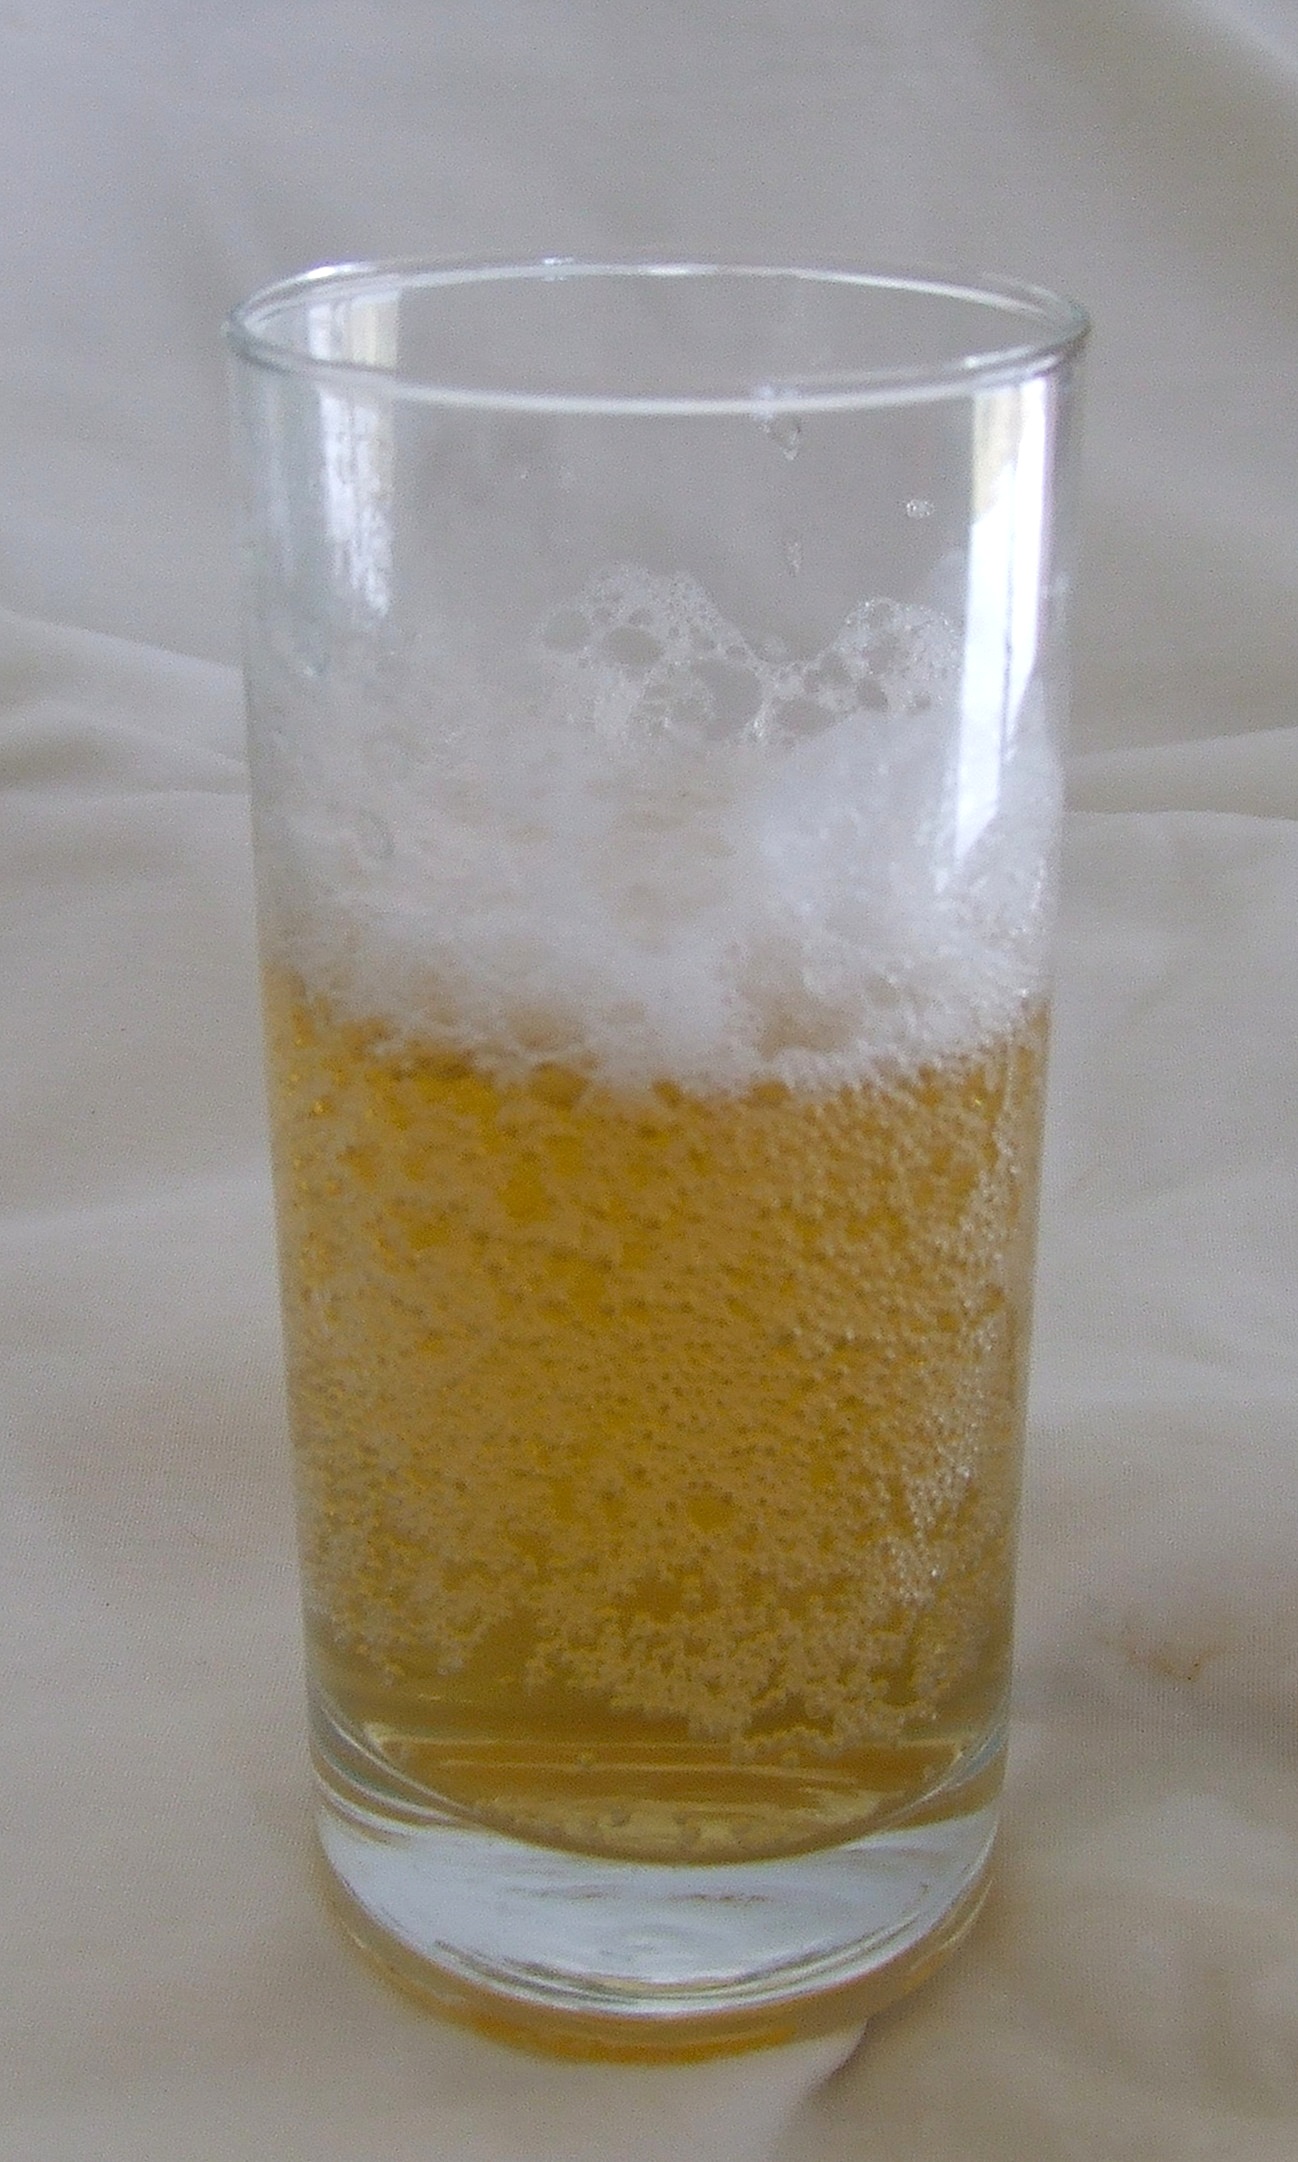 Glass of Kombucha